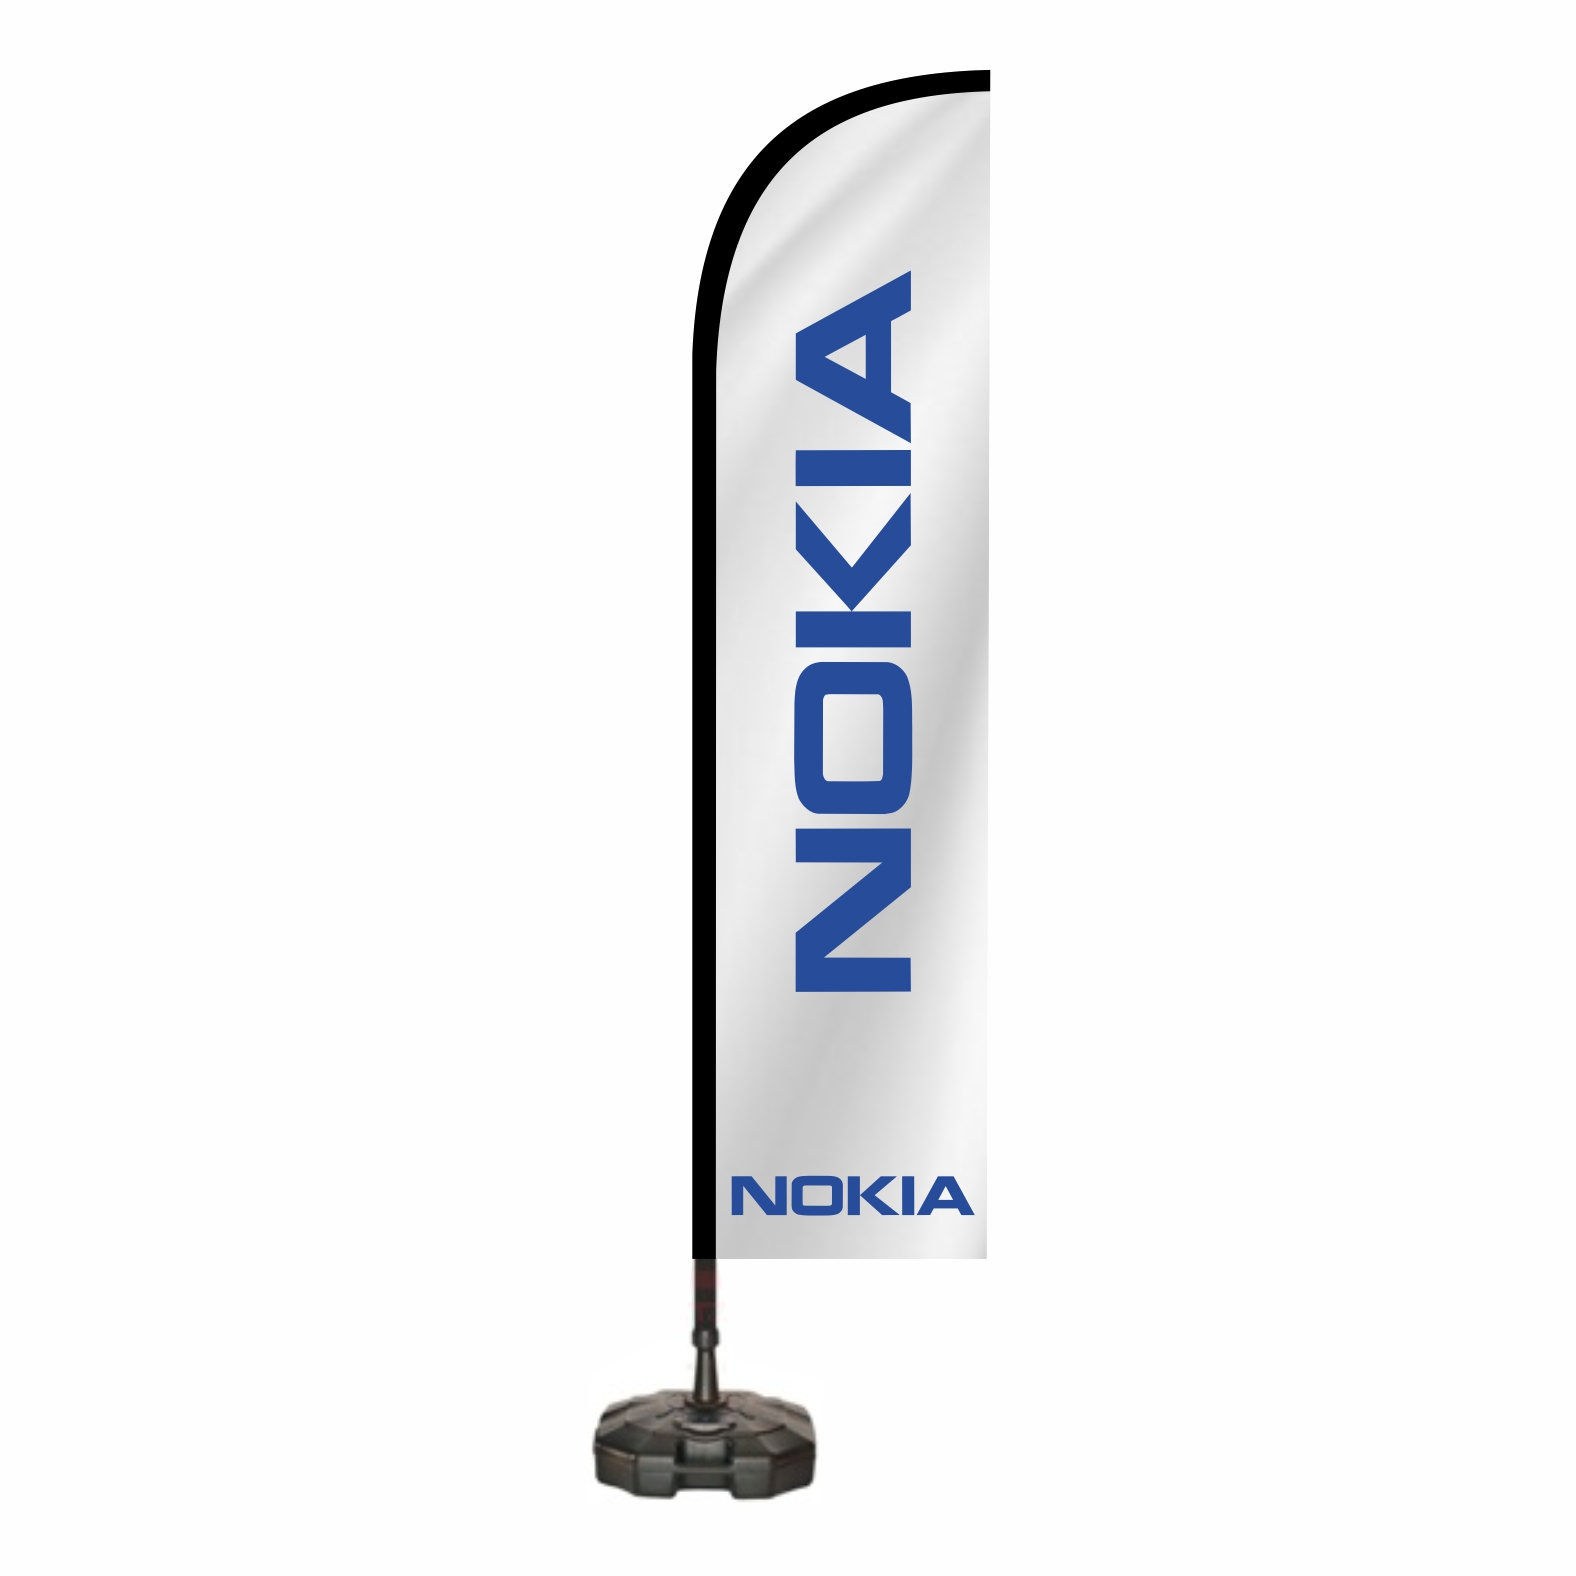 Nokia Plaj Bayra Nerede Yaptrlr